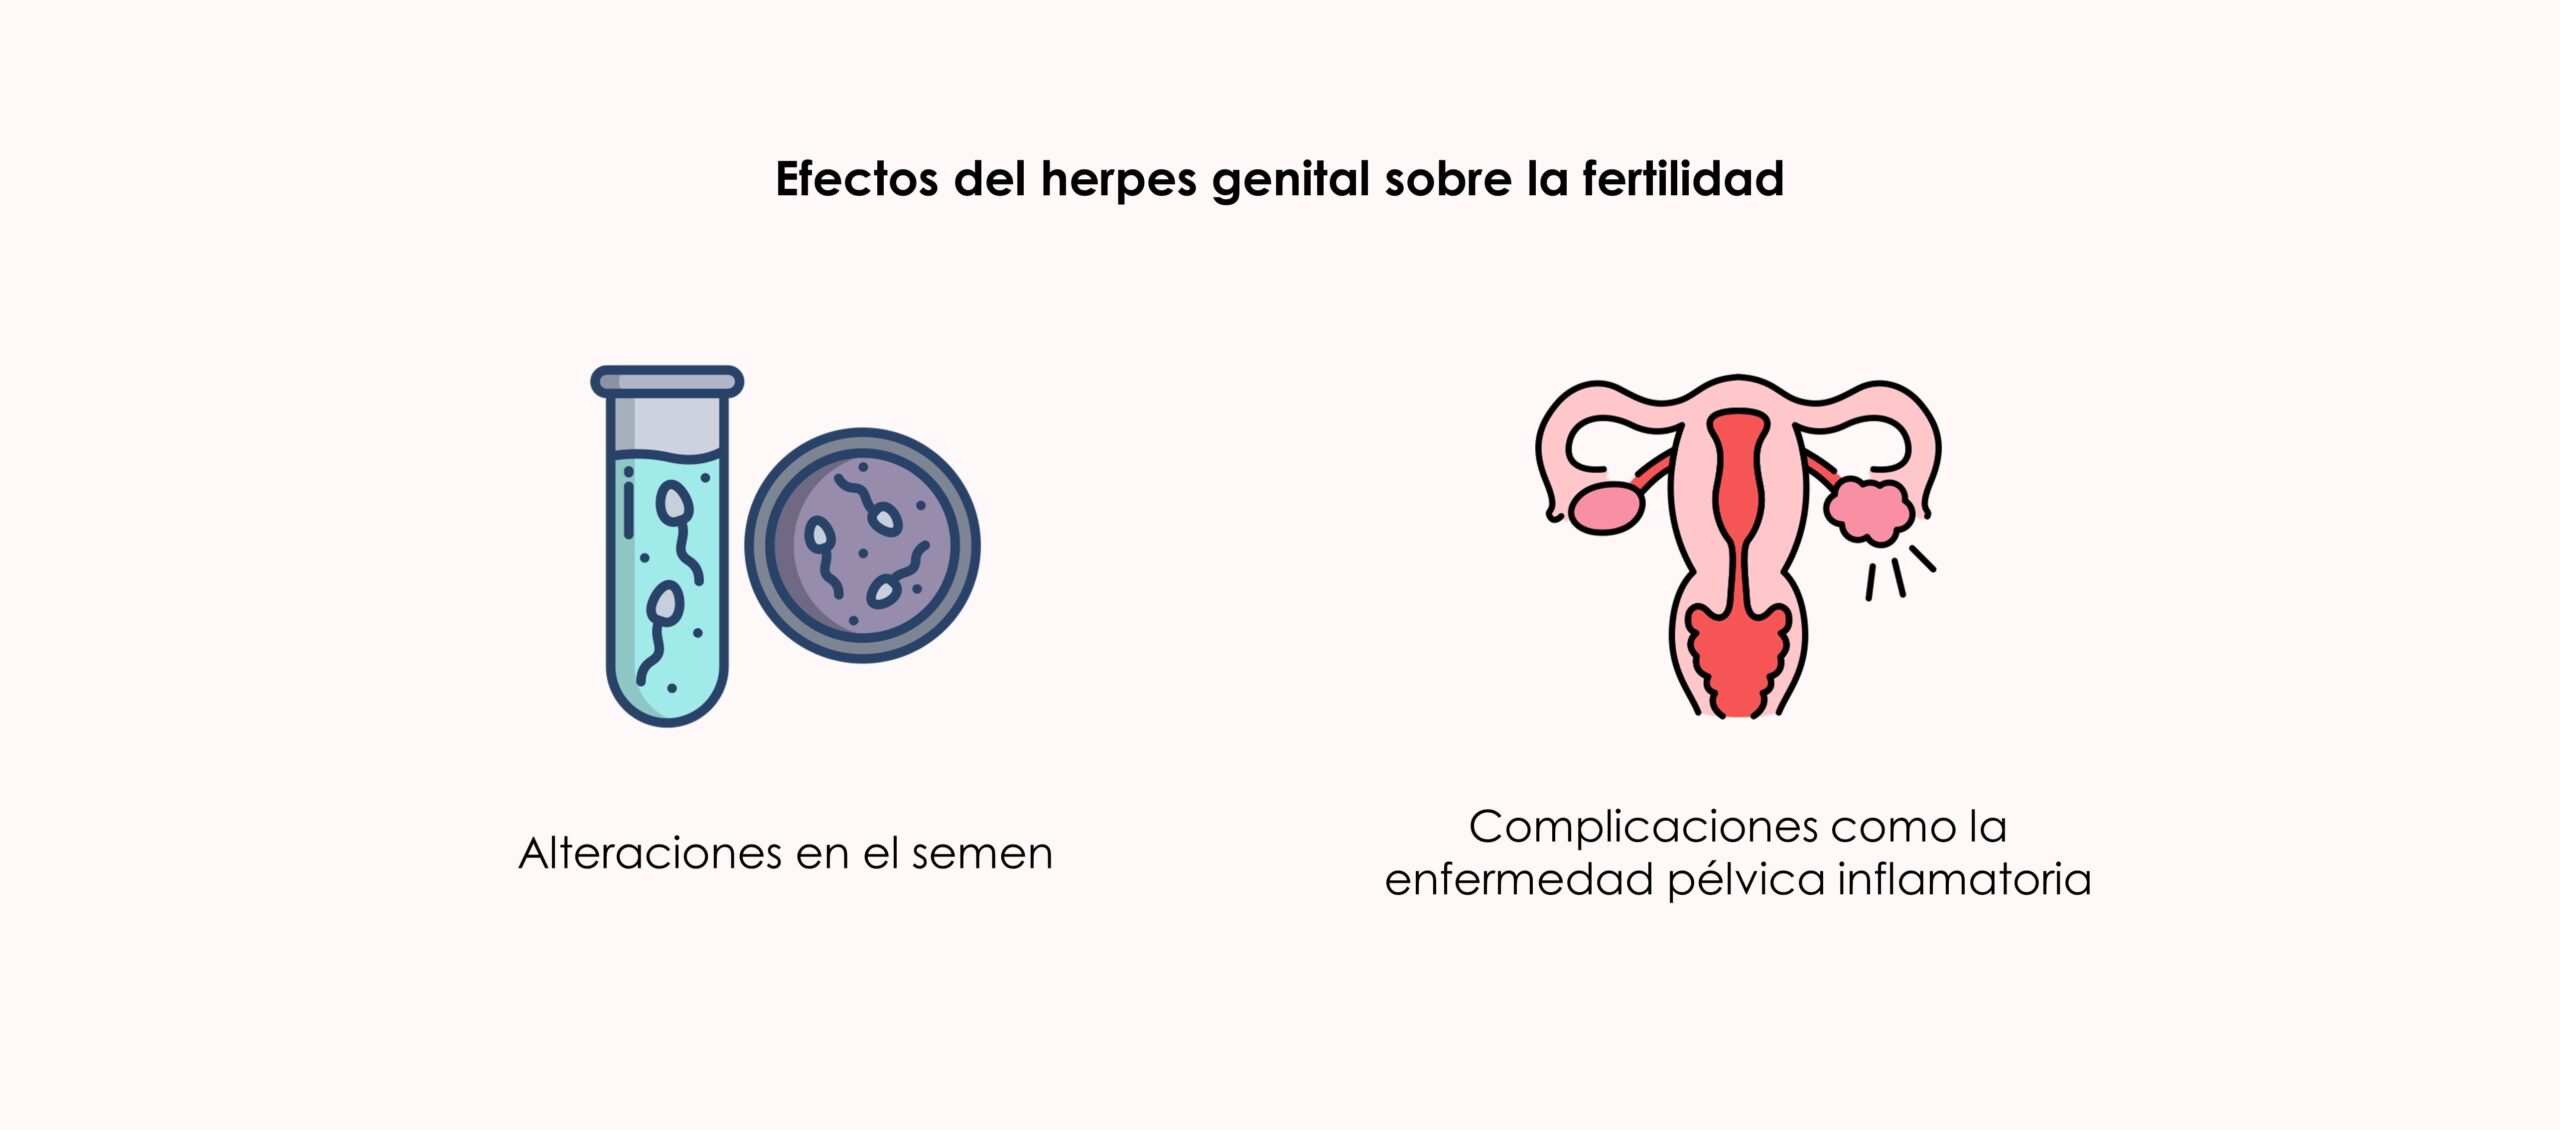 como afecta la infección por herpes genital en la fertilidad